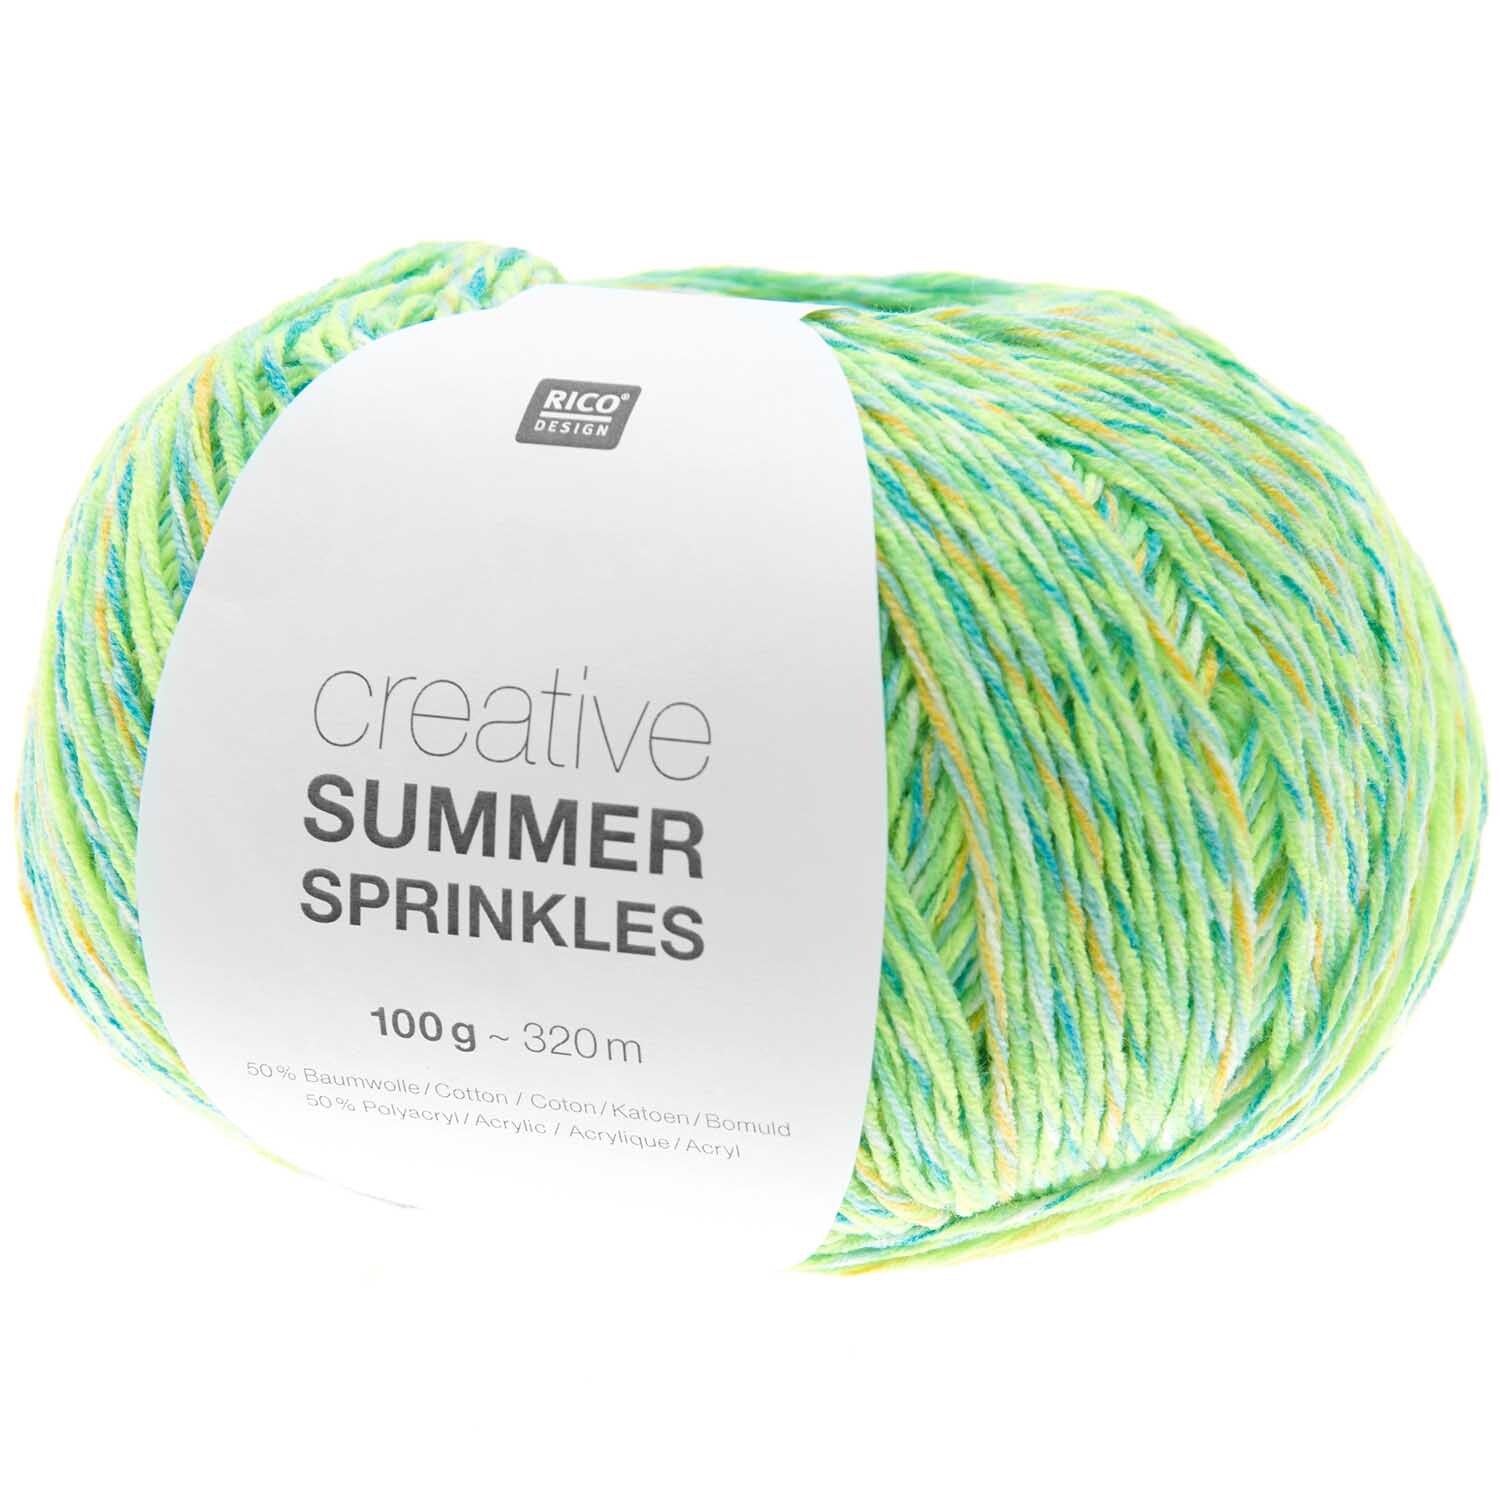 Creative Summer Sprinkles